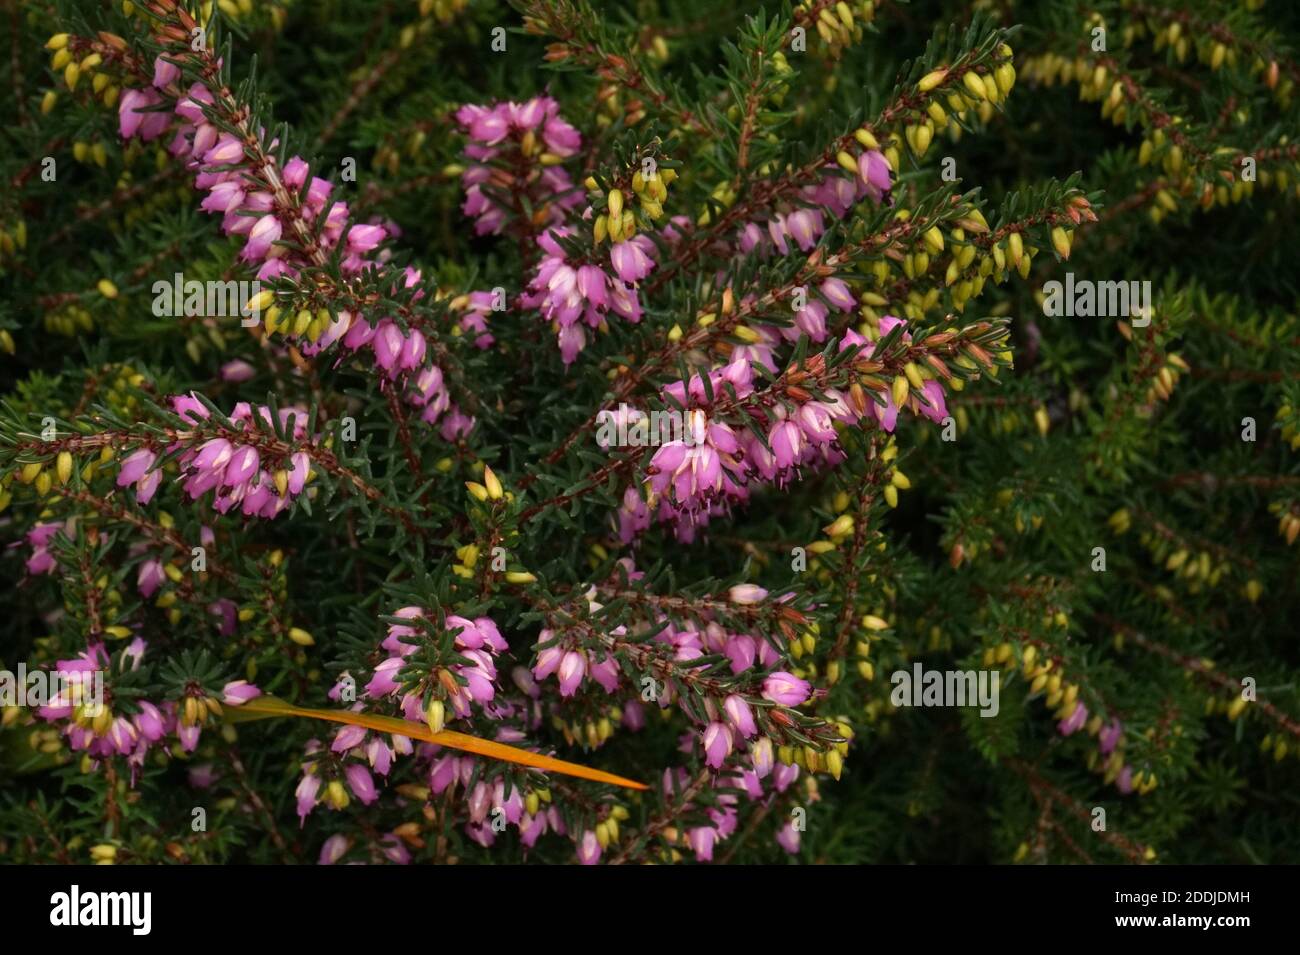 Pink Erica × darleyensis 'Furzey' or Kramer's Rote in flower, Autumn in an English Garden Stock Photo